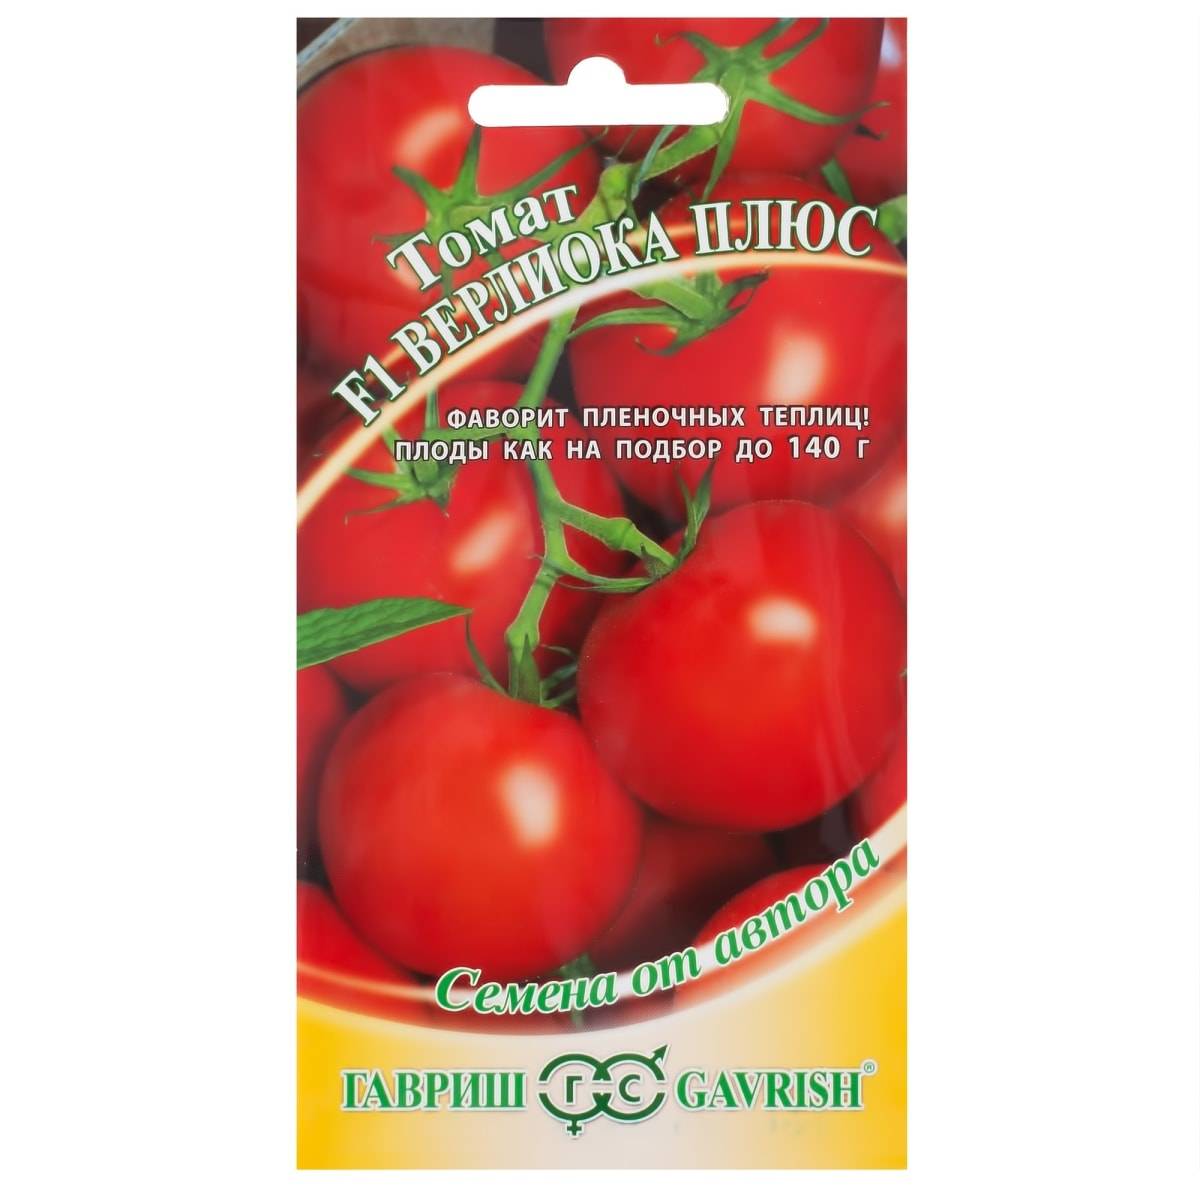 Выращивание томата верлиока